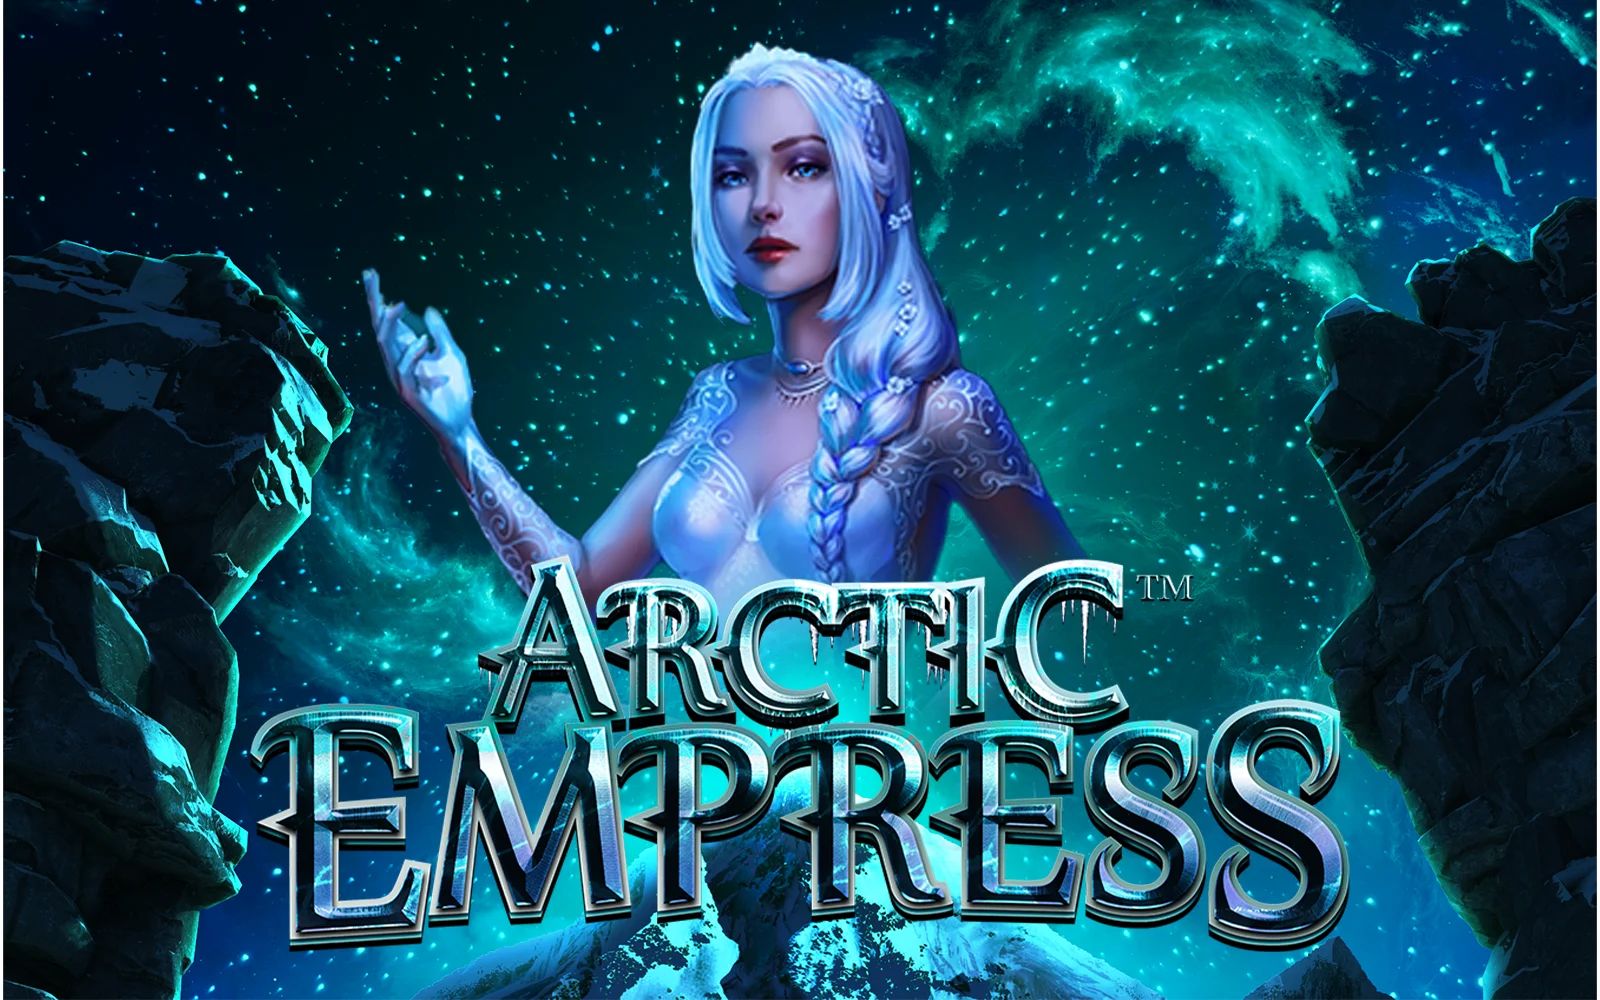 Gioca a Arctic Empress sul casino online Starcasino.be